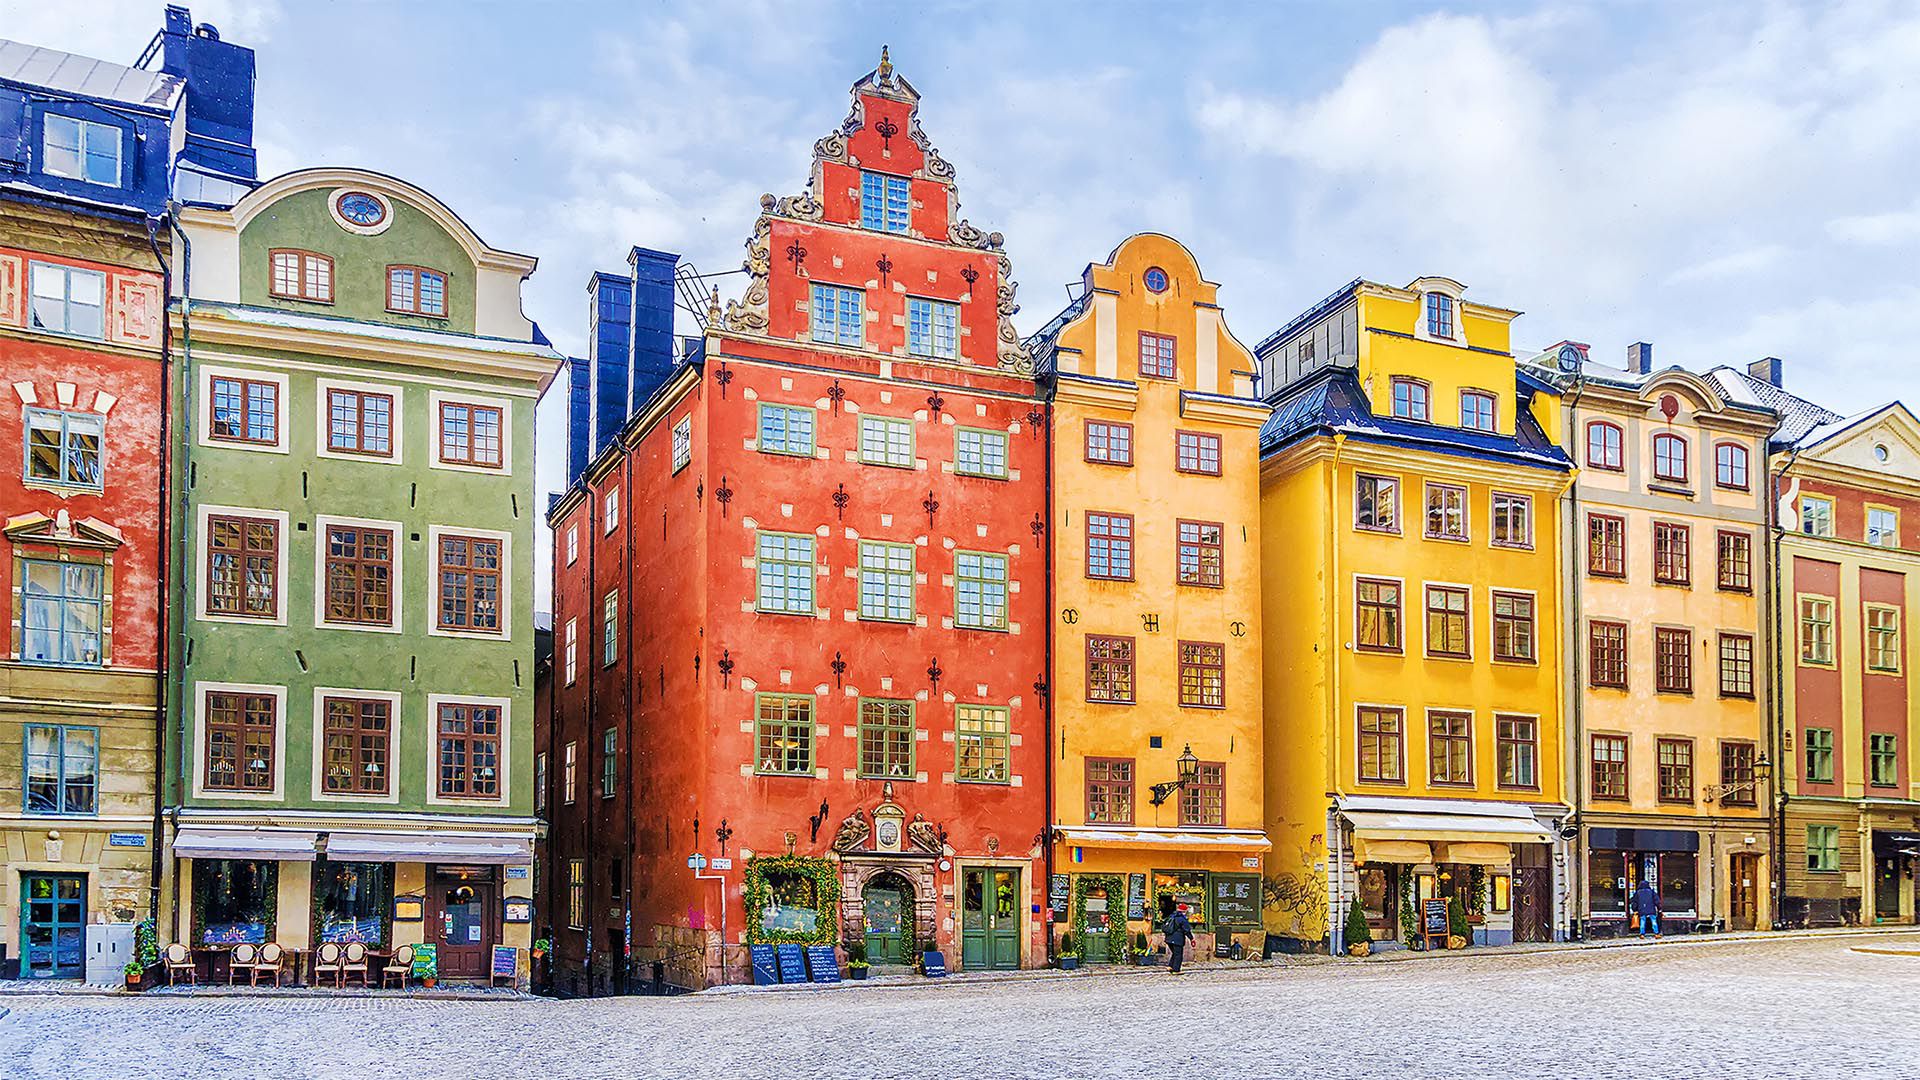 Estocolmo sigue siendo una de las ciudades más seguras, no solo en Europa, sino en el mundo. Es una ciudad con una tasa de criminalidad tremendamente baja, y donde tanto los residentes como los turistas se sienten seguros